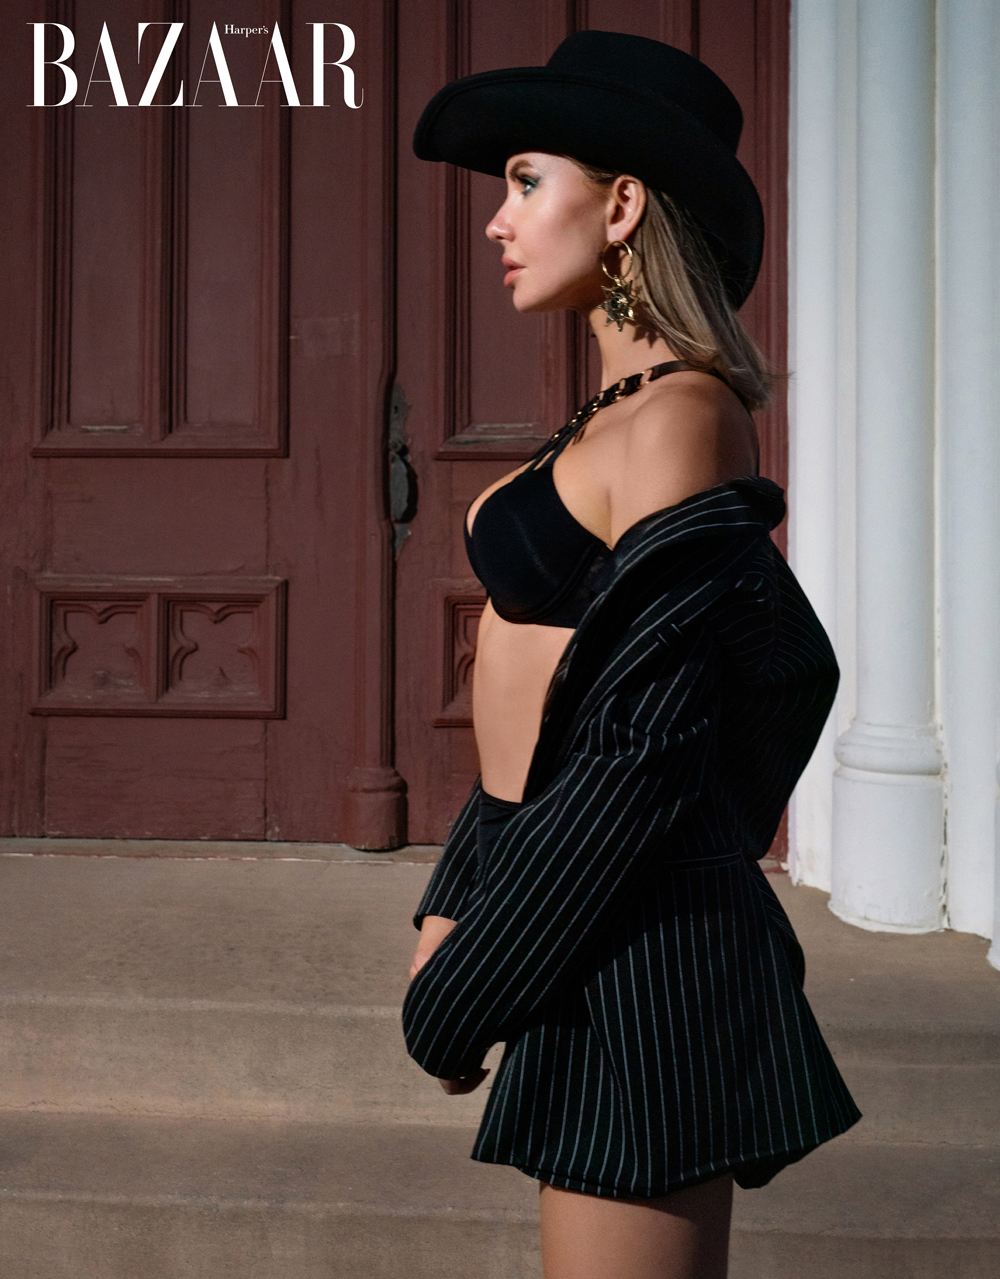 Model Yuliya Lasmovich stars in the West Please! photostory shot by photographer Joy Strotz